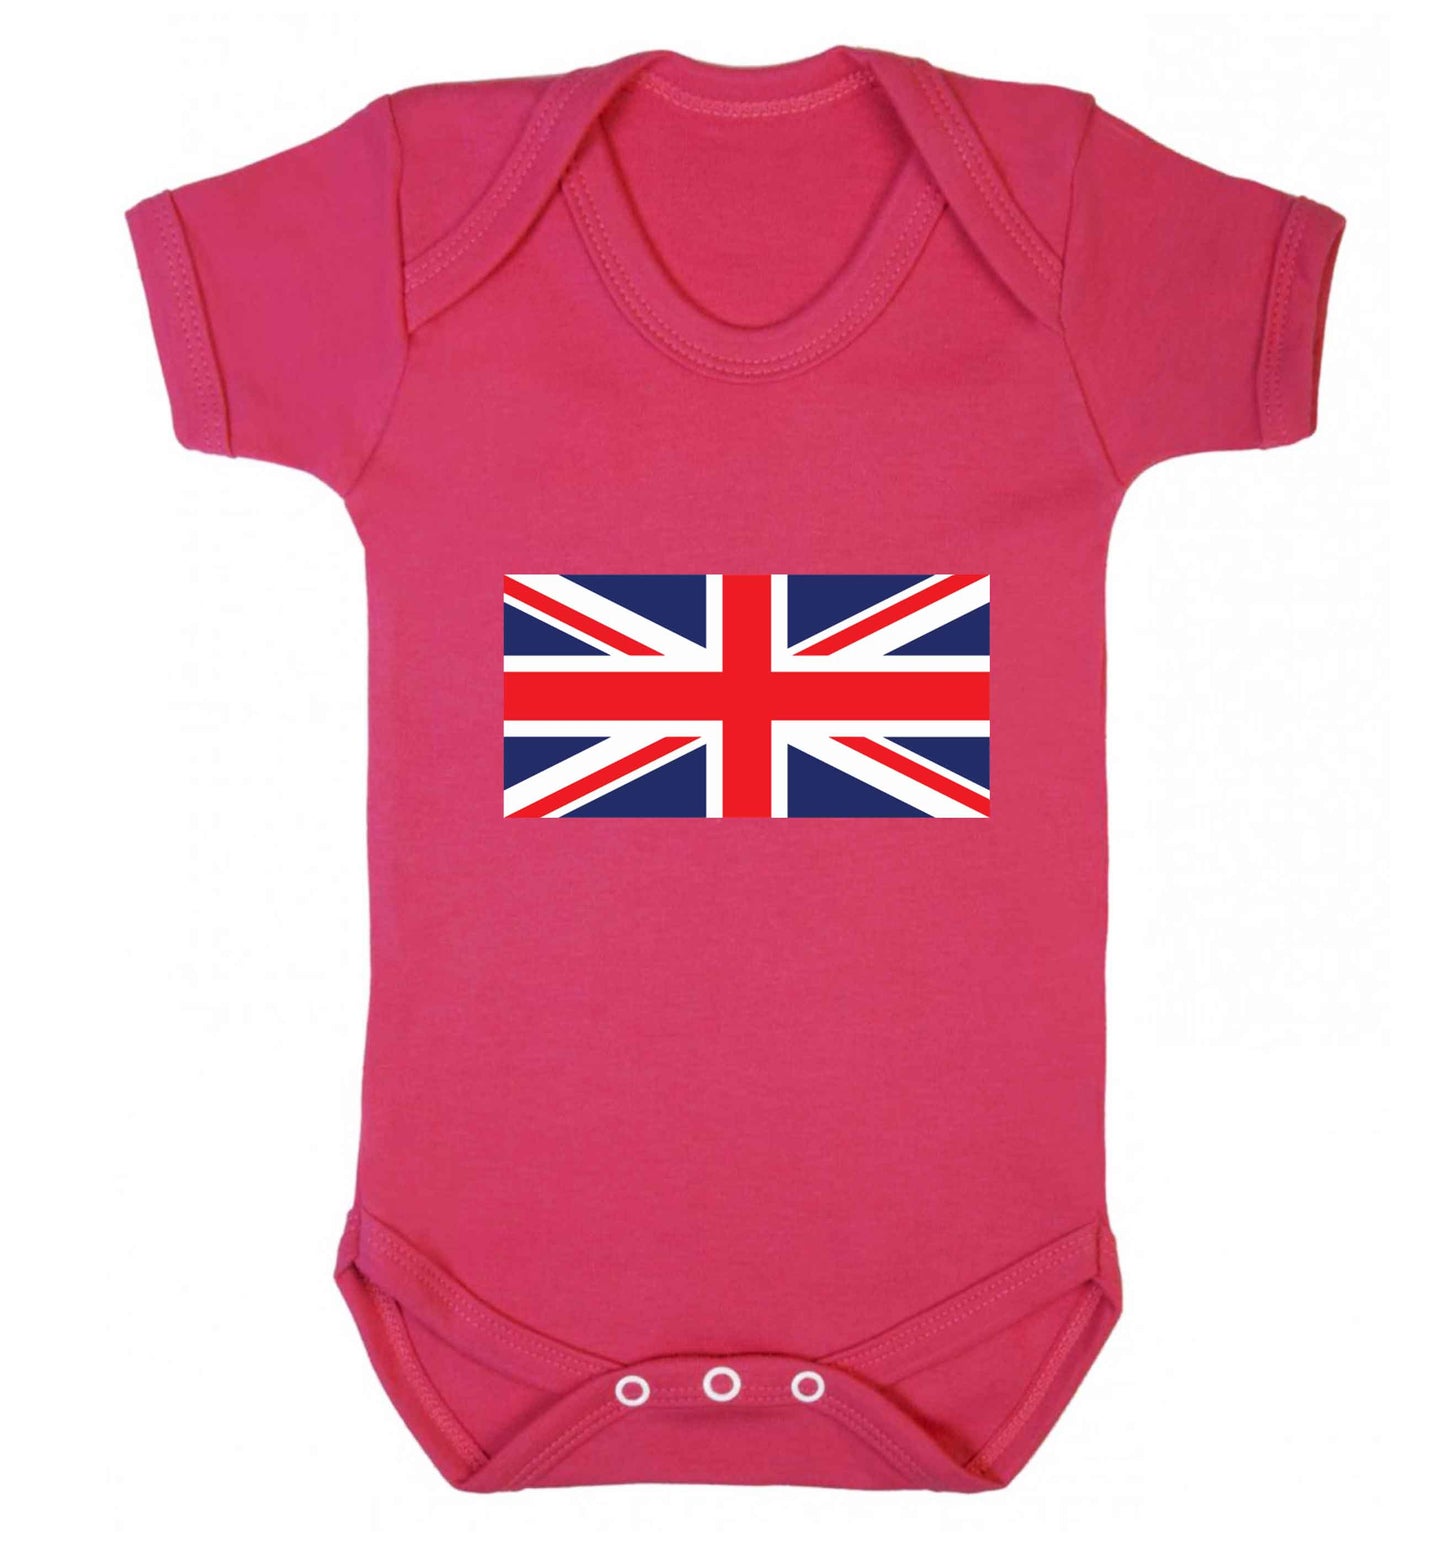 Union Jack baby vest dark pink 18-24 months